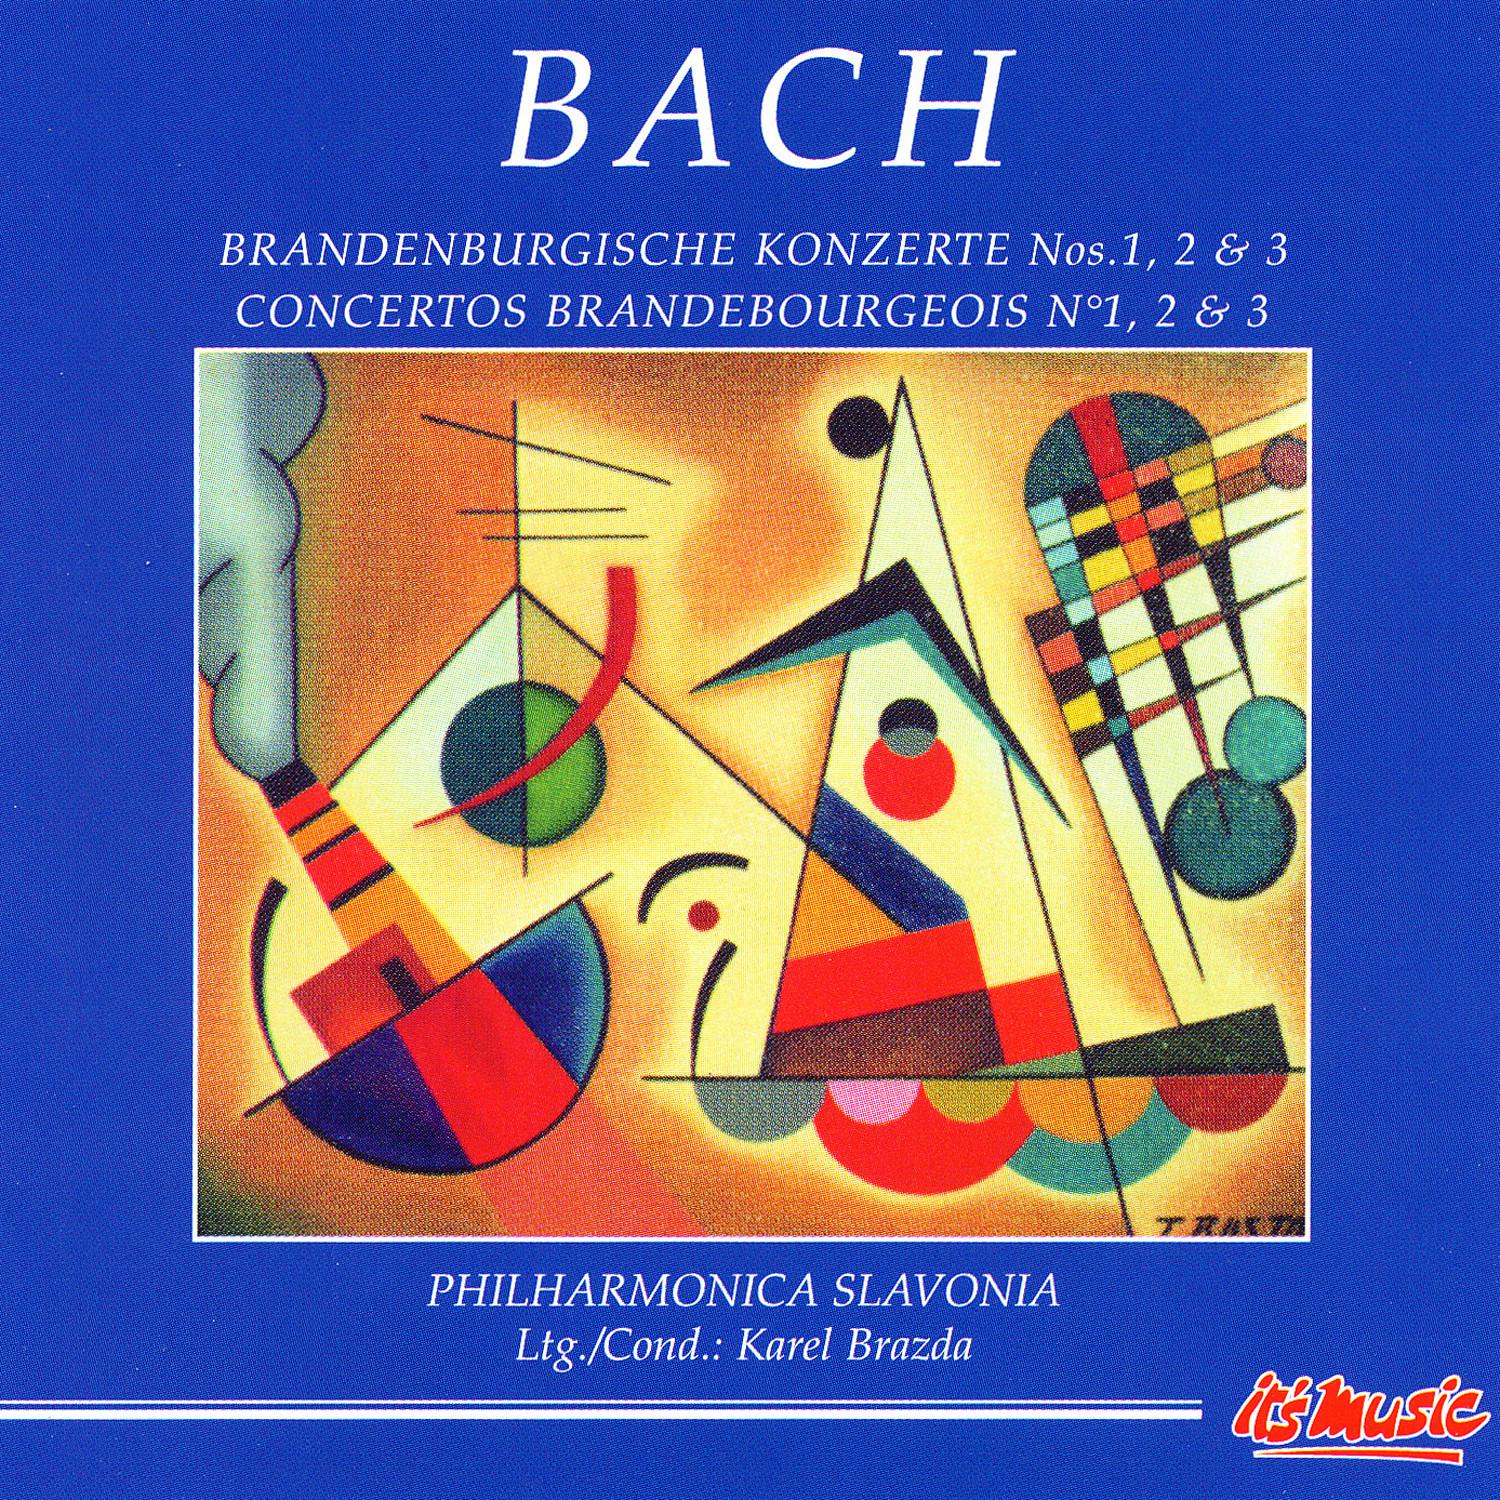 Brandenburg Concerto No. 3 in G major II. Adagio Cadenza